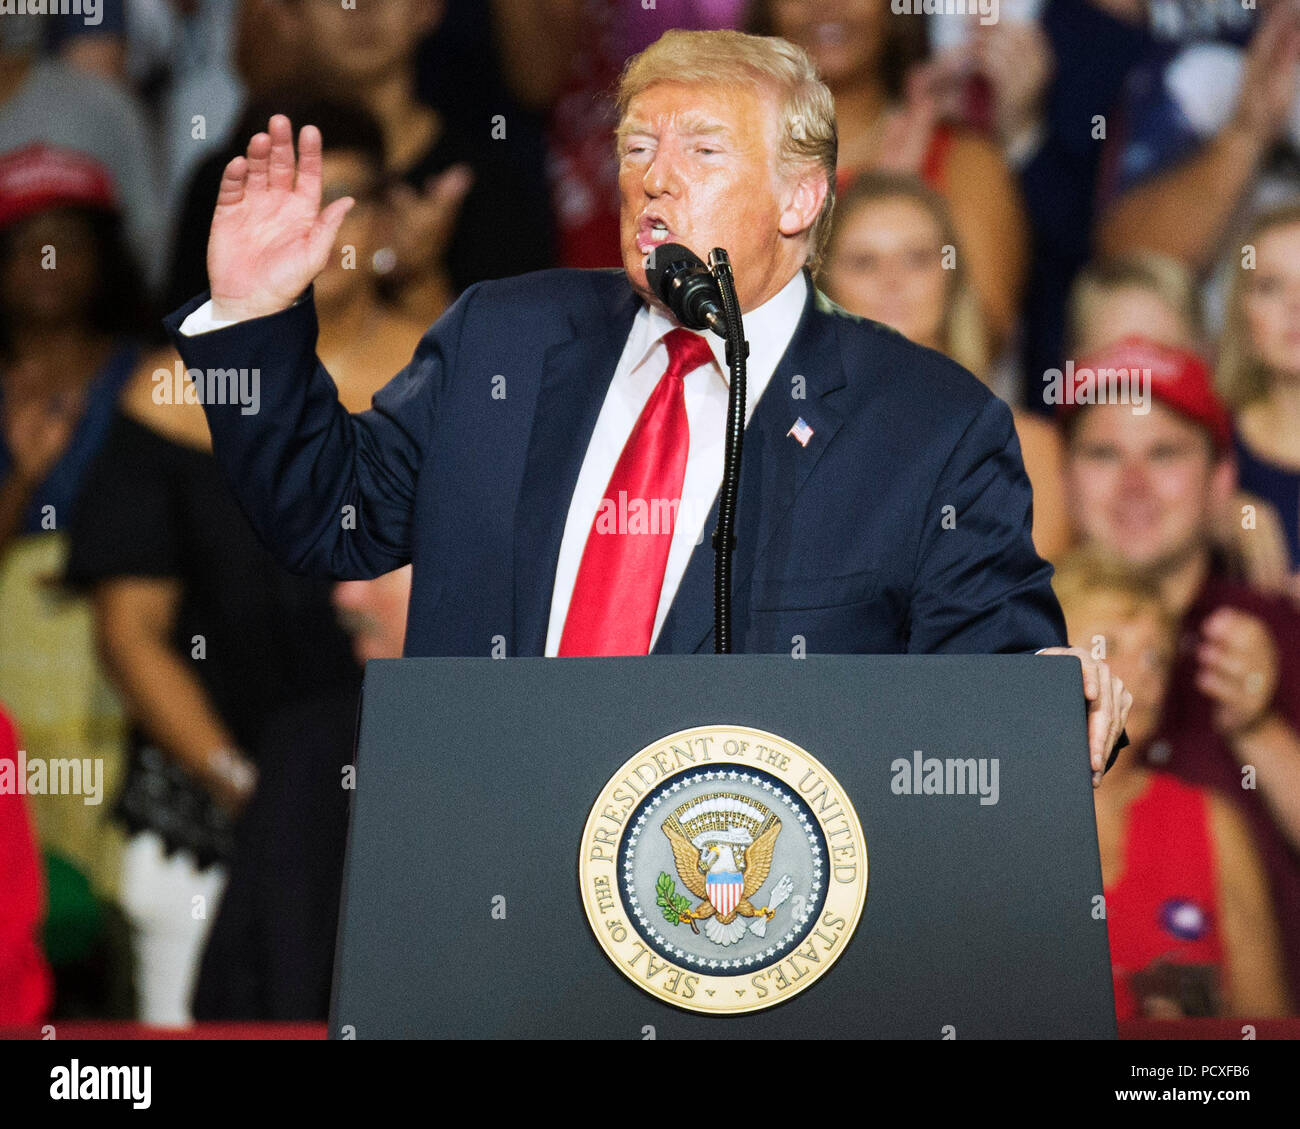 L'Ohio, aux États-Unis. 4 août 2018. Donald Trump s'adresse à la foule à la rendre de nouveau l'Amérique Grand Rassemblement à Powell, Ohio USA. Brent Clark/Alamy Live News Banque D'Images